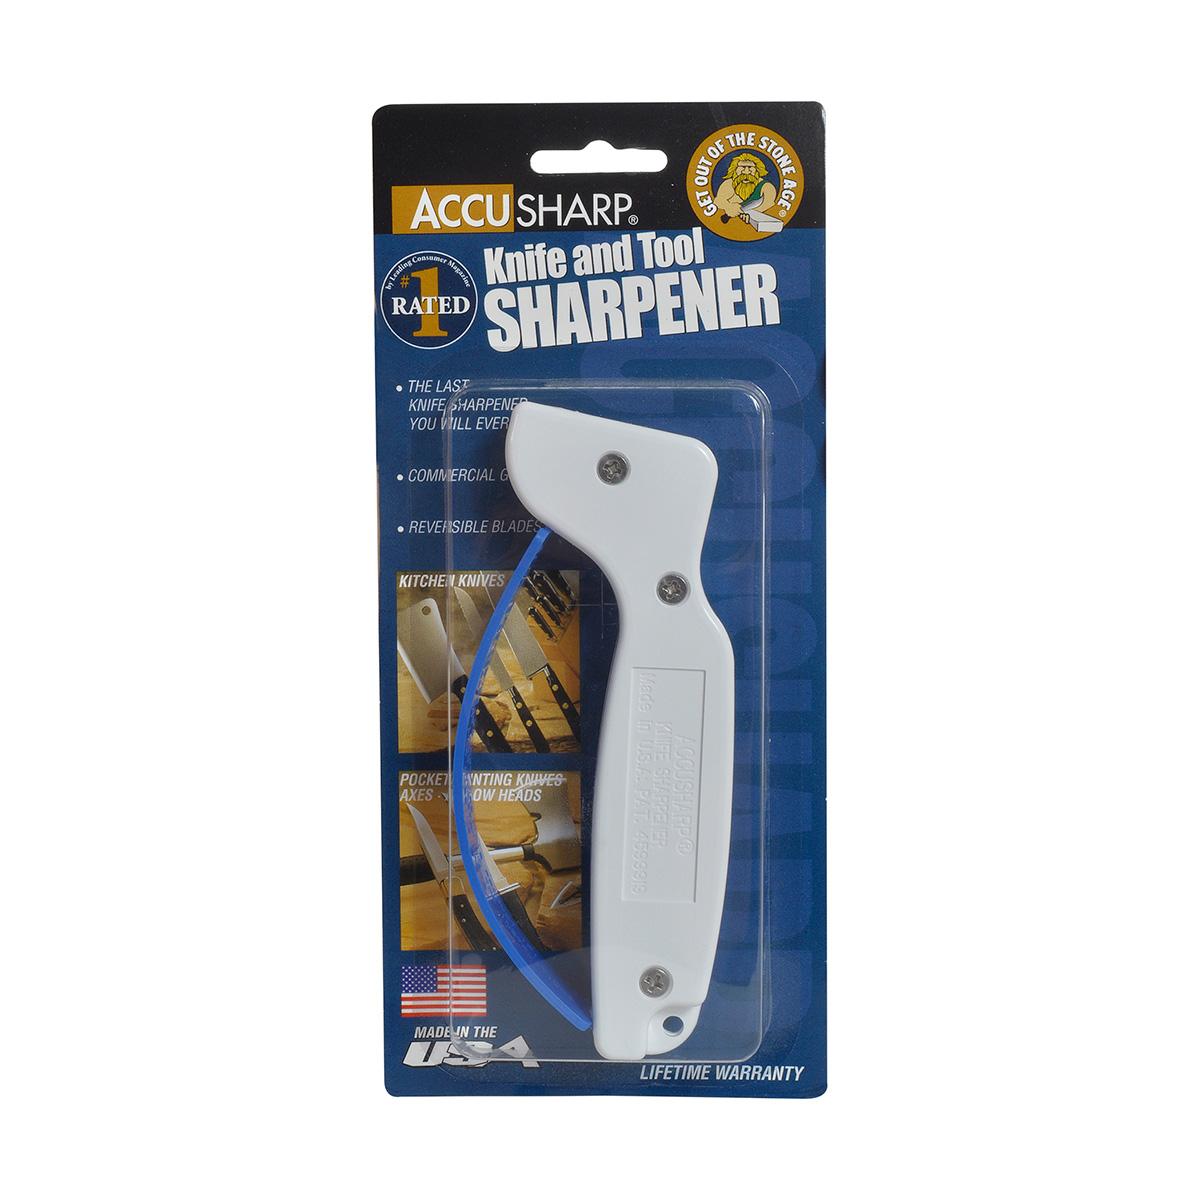 ACCUSHARP | Knife and Tool Sharpener